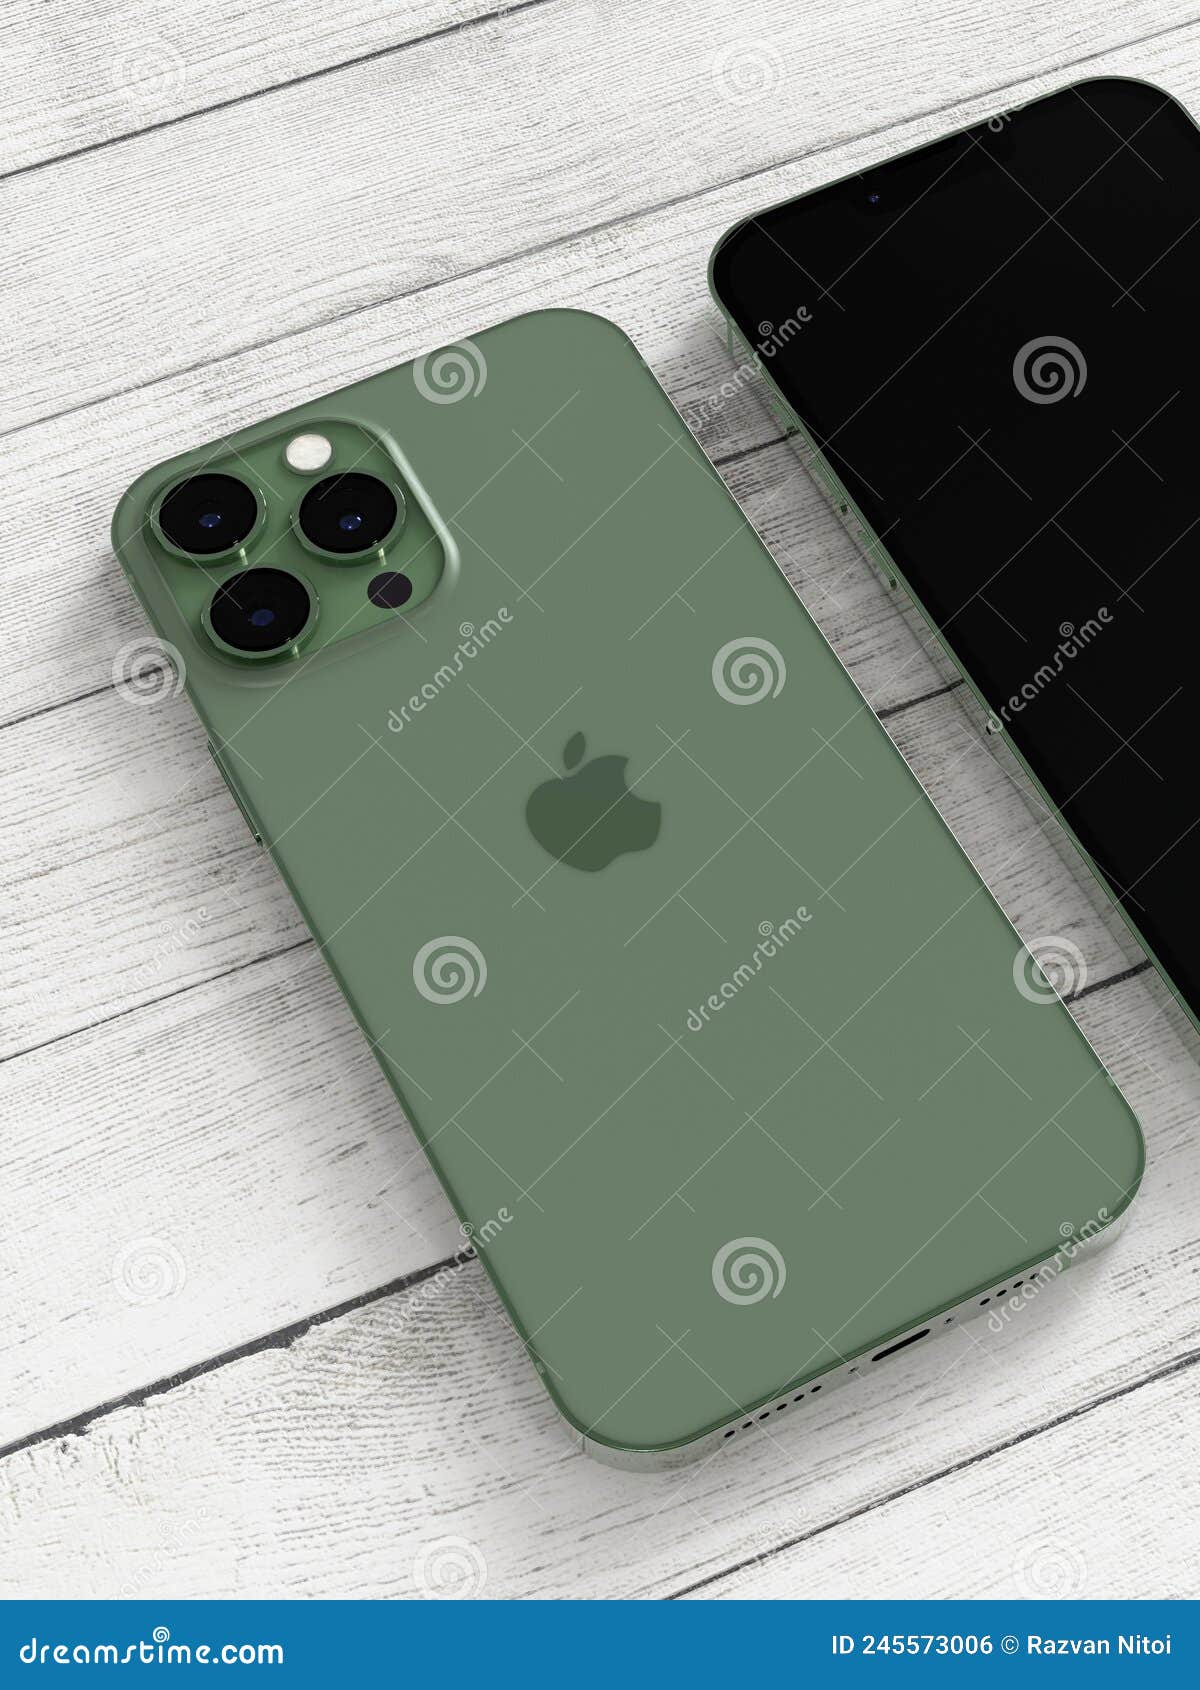 Apple Iphone 13 Pro Max Alpine Green Fronte E Retro Confronto Fotografia  Editoriale - Immagine di sfondo, cellulare: 245573006